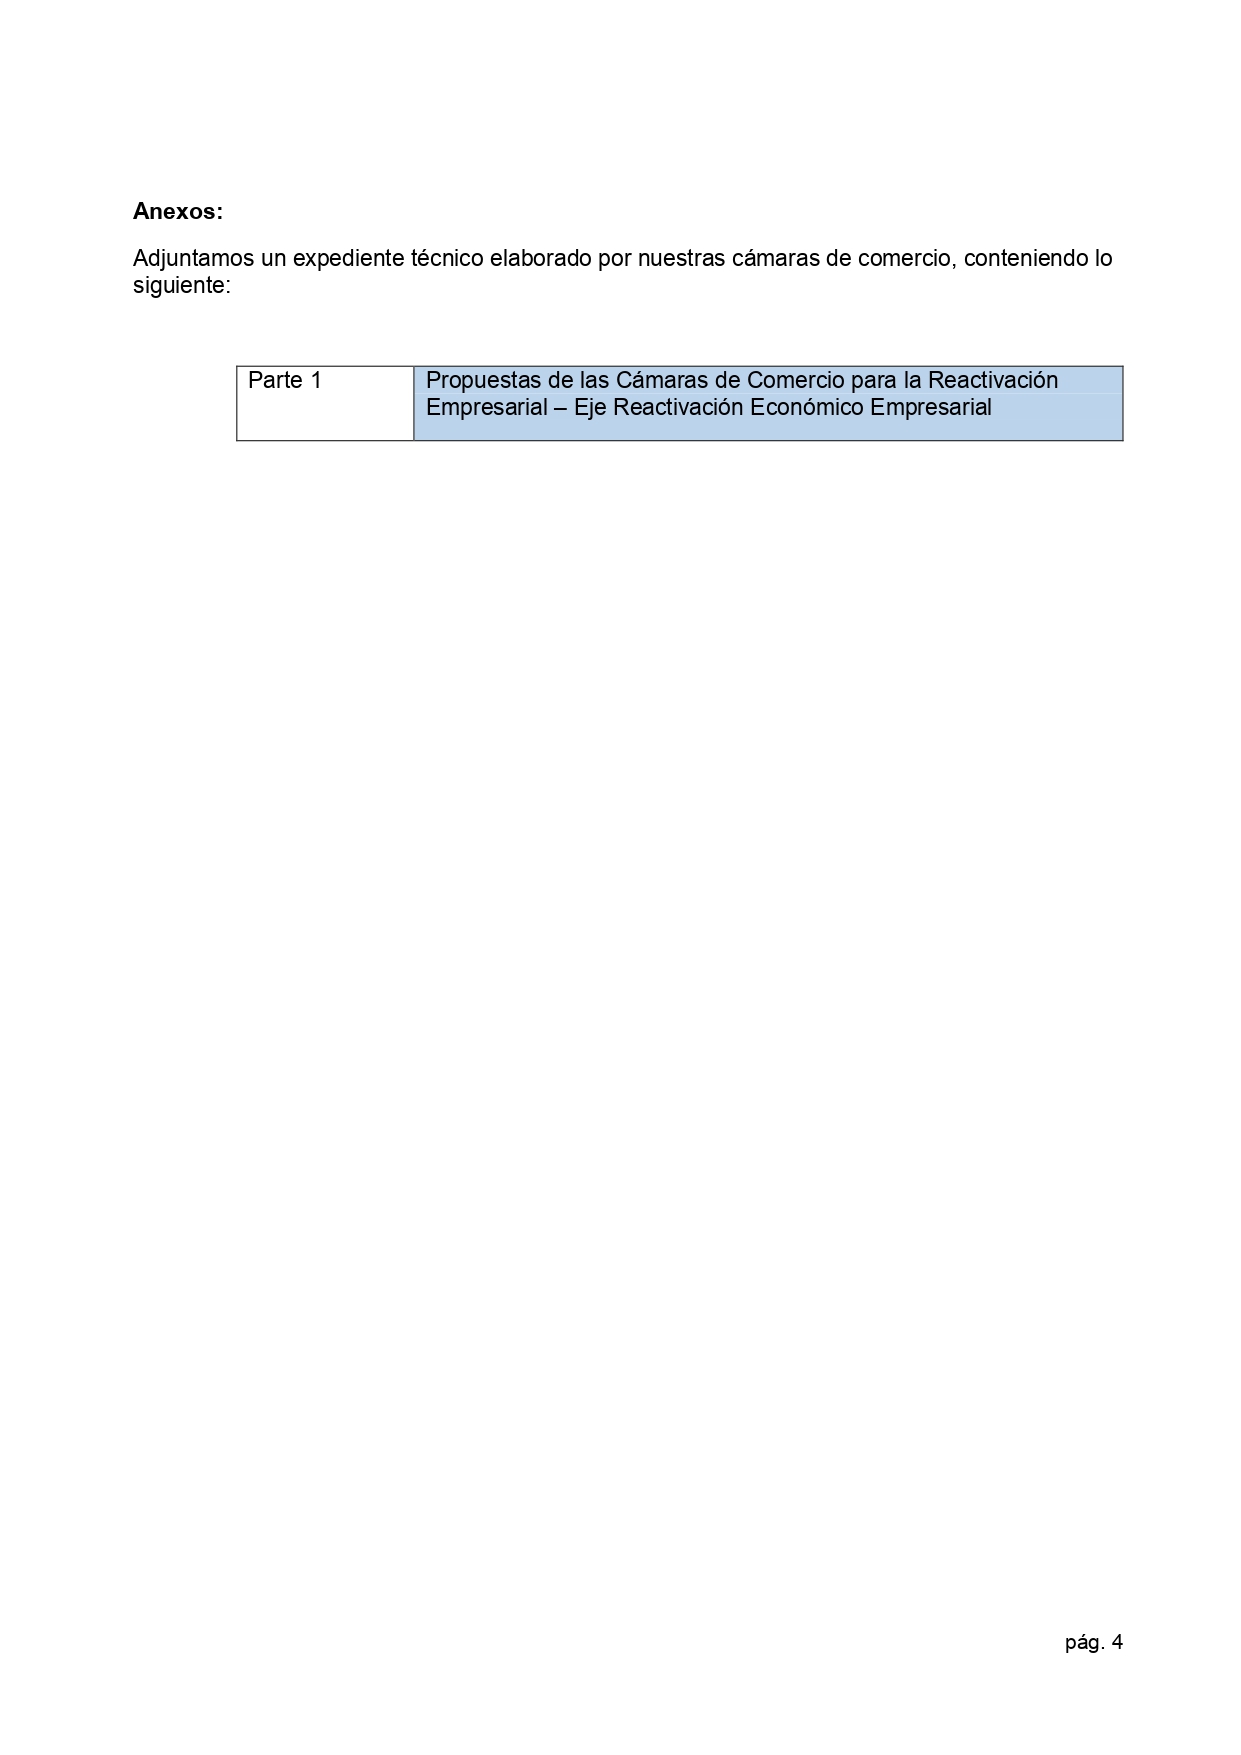 01.06.2020 Carta propuestas de cámaras para la reactivación económica  Presidencia page 0004